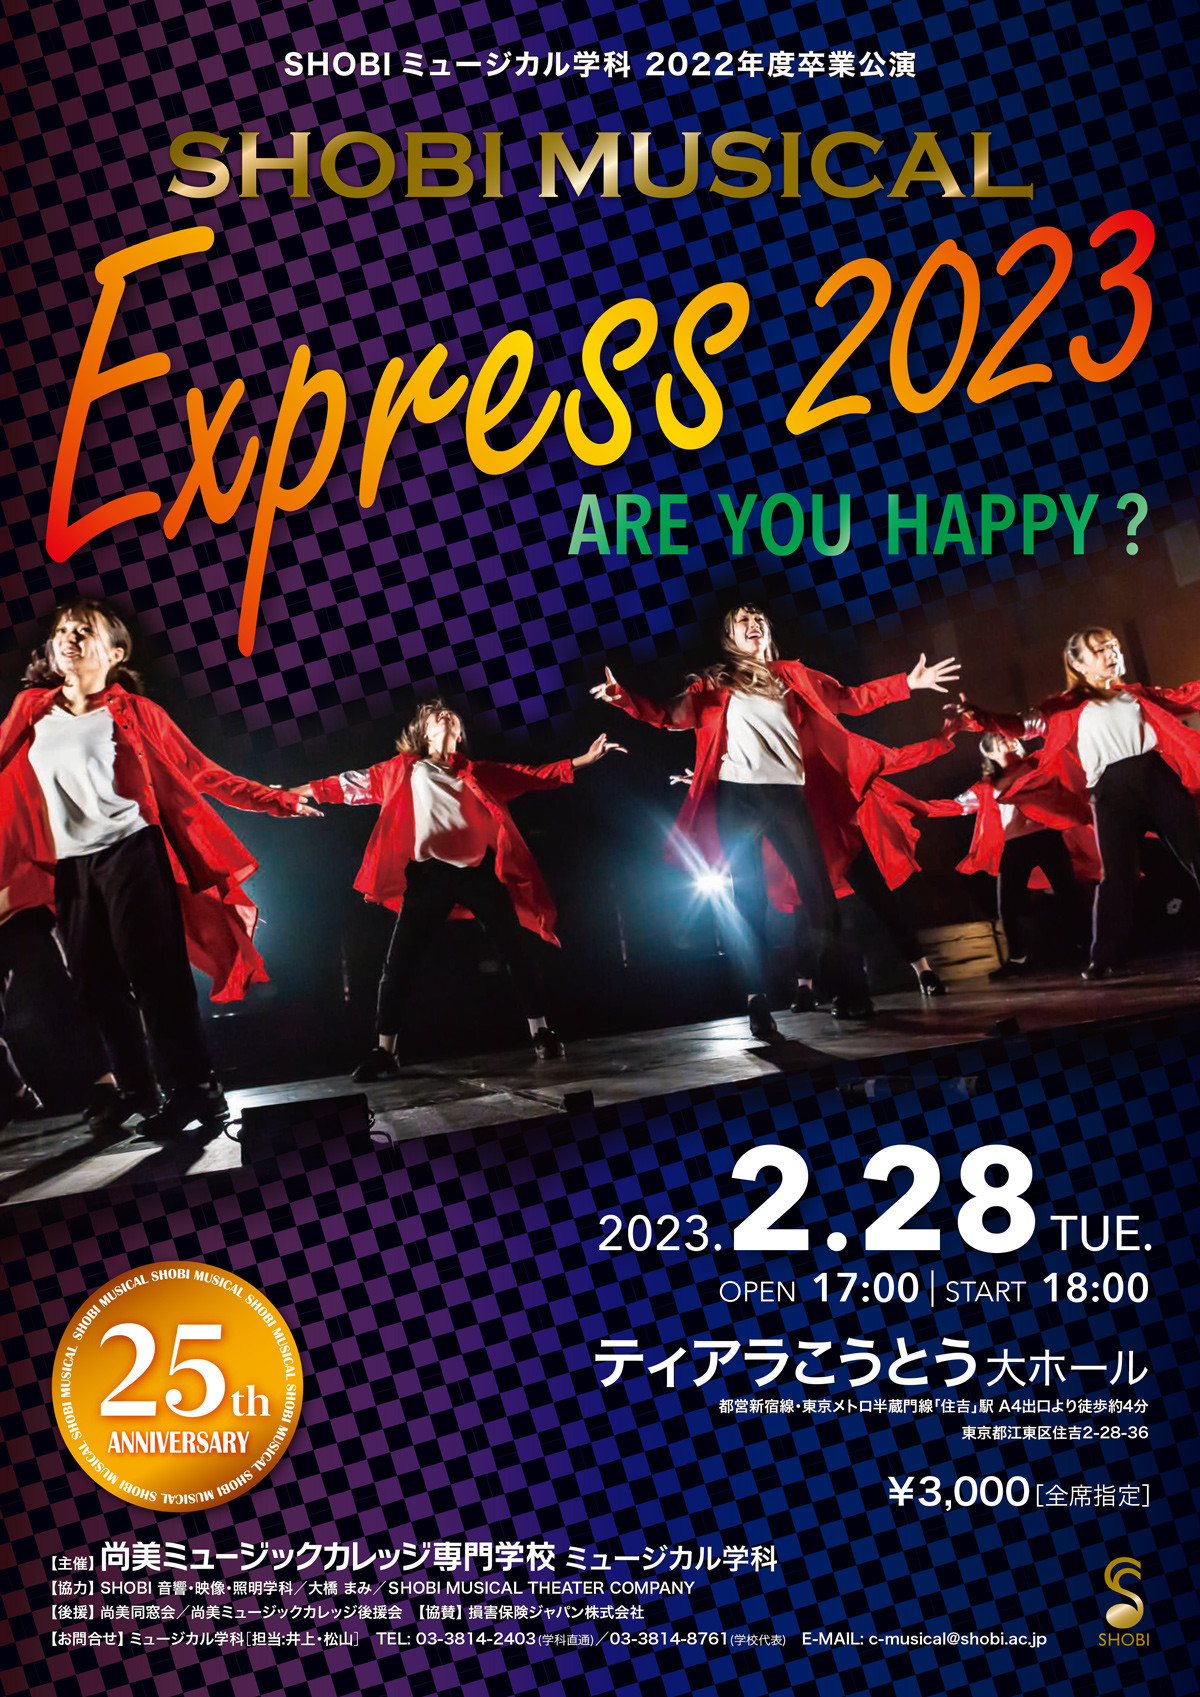 【2月28日開催】ミュージカル学科の2022年度卒業制作作品SHOBI MUSICAL EXPRESS 2023「ARE YOU HAPPY ?」